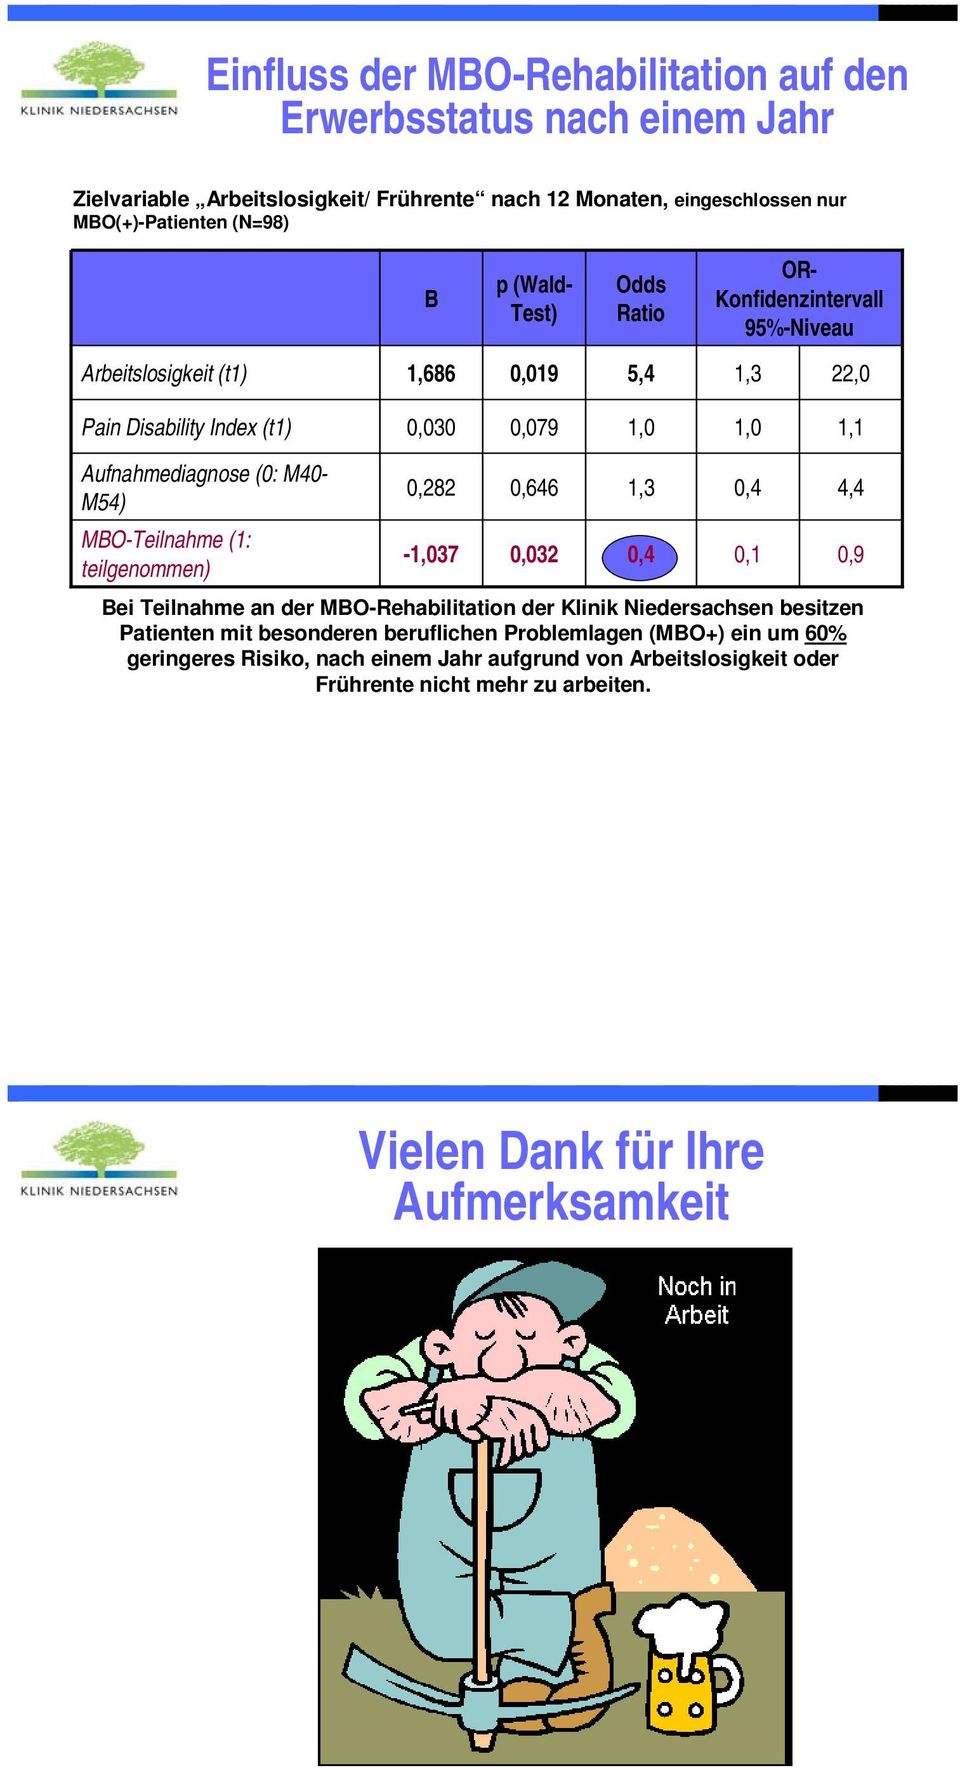 0,646 MBO-Teilnahme (1: -1,037 0,032 0,4 0,1 0,9 teilgenommen) Bei Teilnahme an der MBO-Rehabilitation der Klinik Niedersachsen besitzen Patienten mit besonderen beruflichen